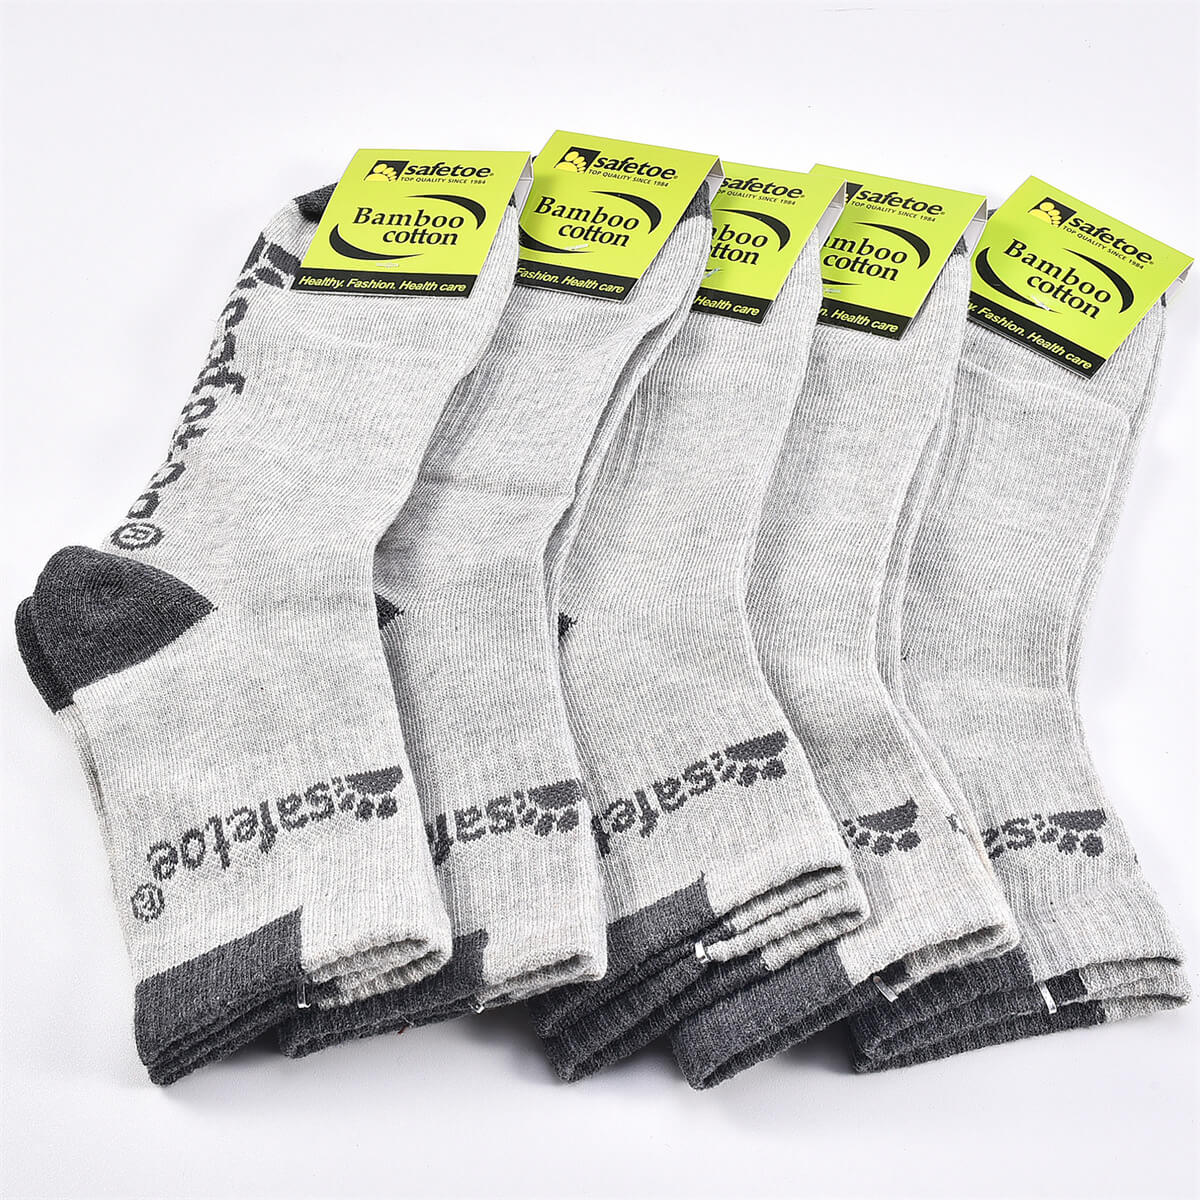 Safetoe 5 Pack Bamboo Cotton Crew Socks, Quarter Socks for Men & Women